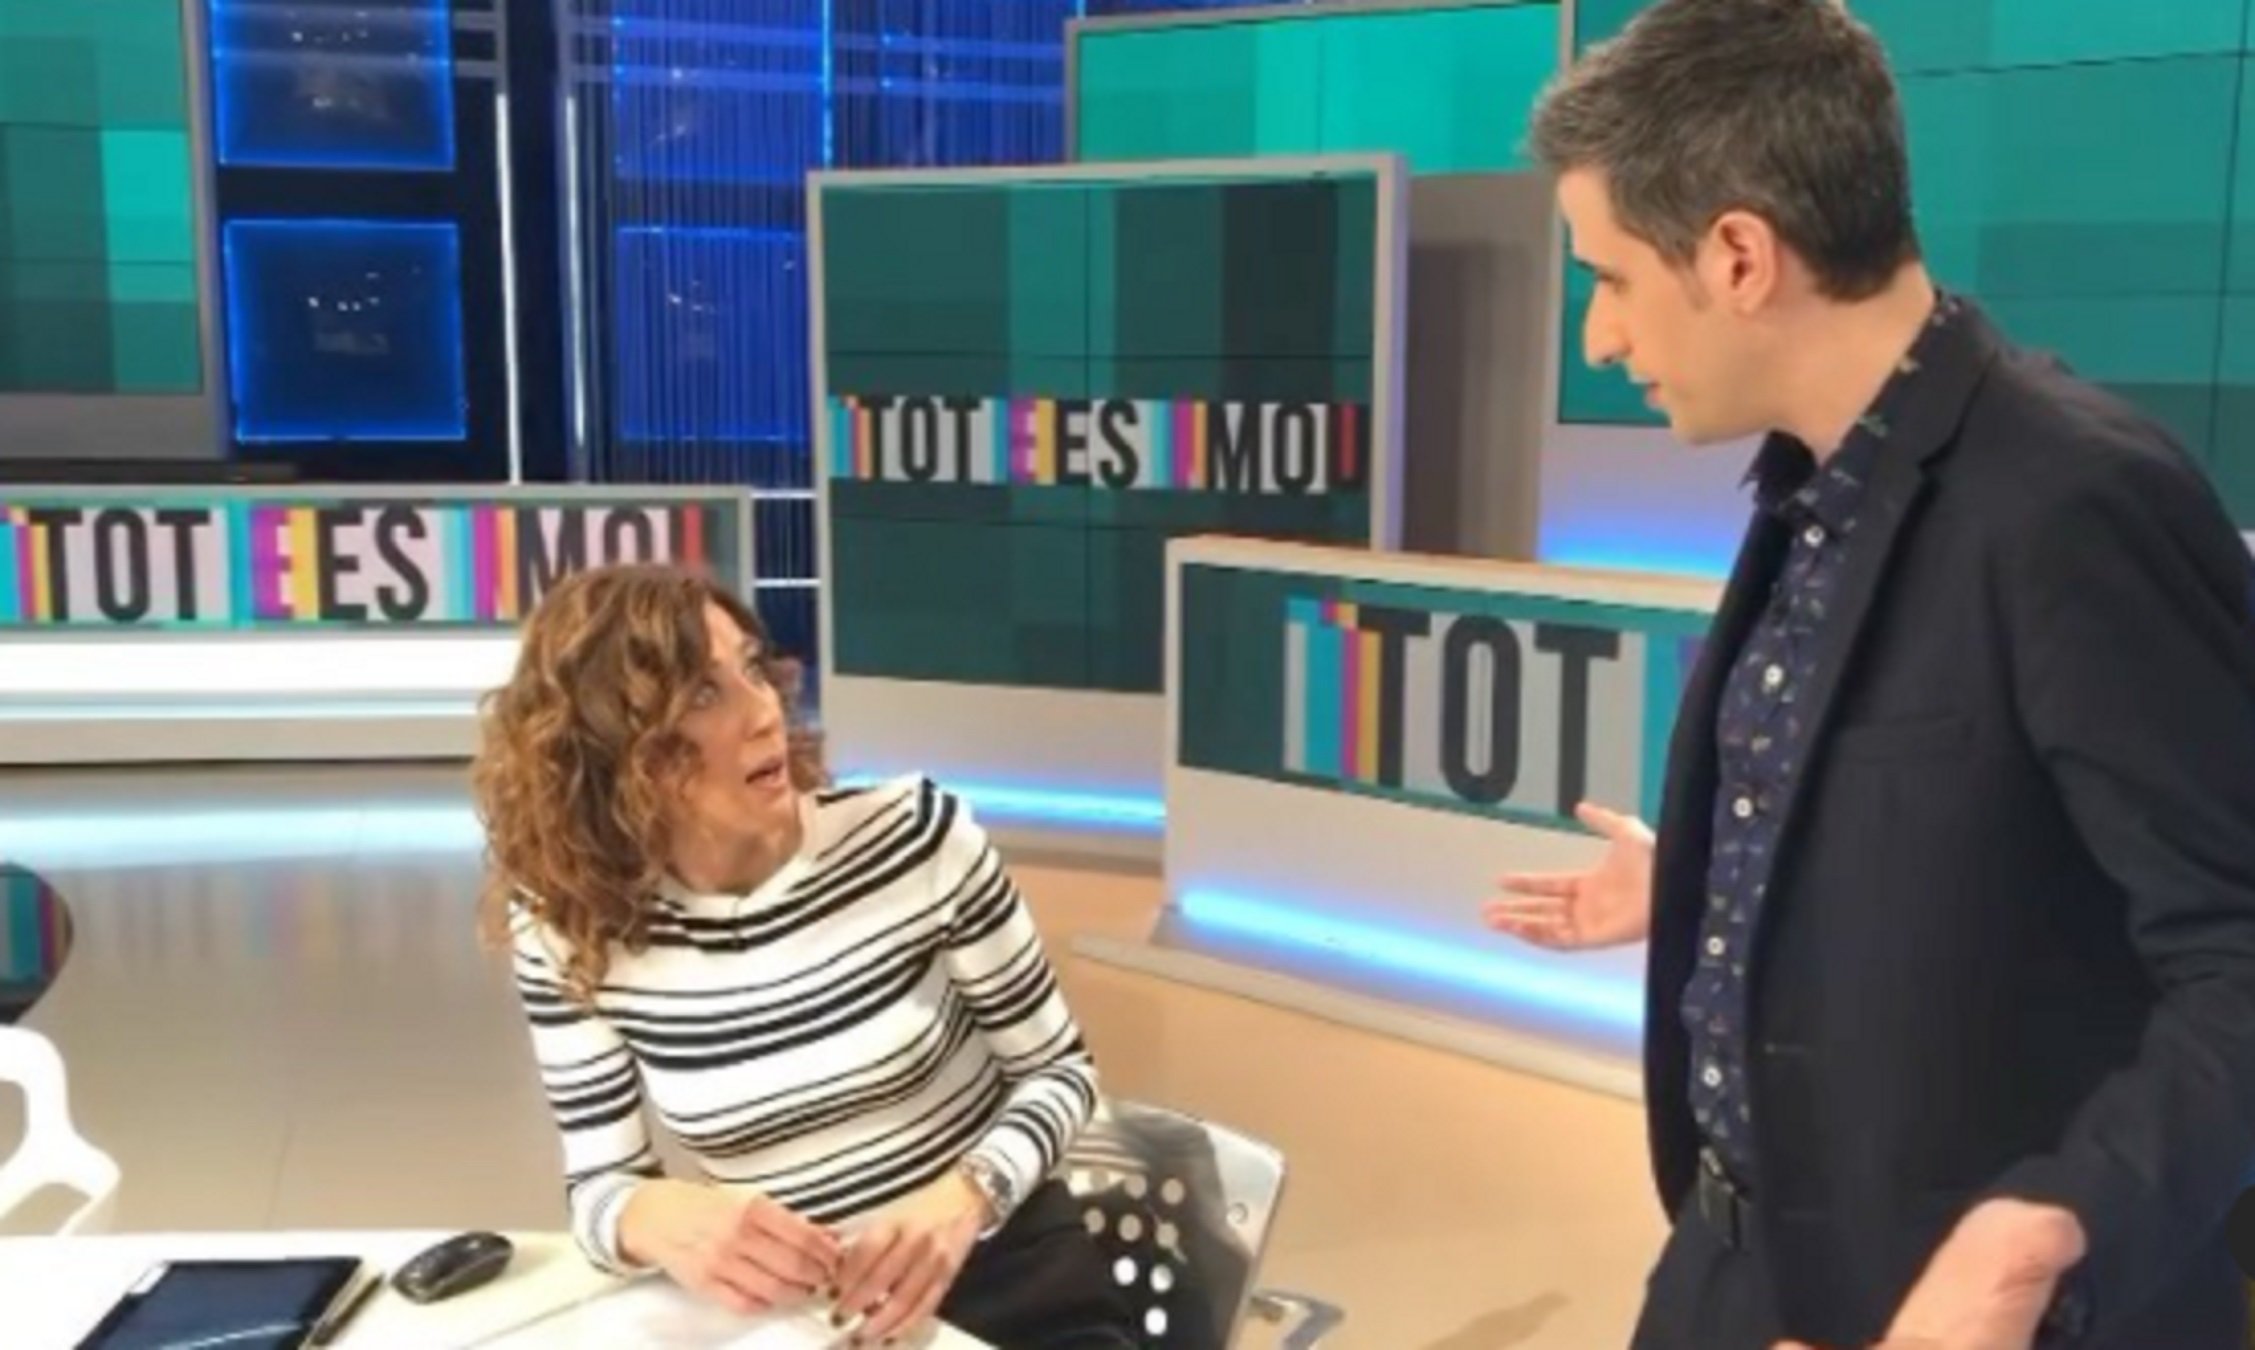 Espectadores de Catalunya irados por lo hecho en Tot es mou (TV3): "Qué huevos"